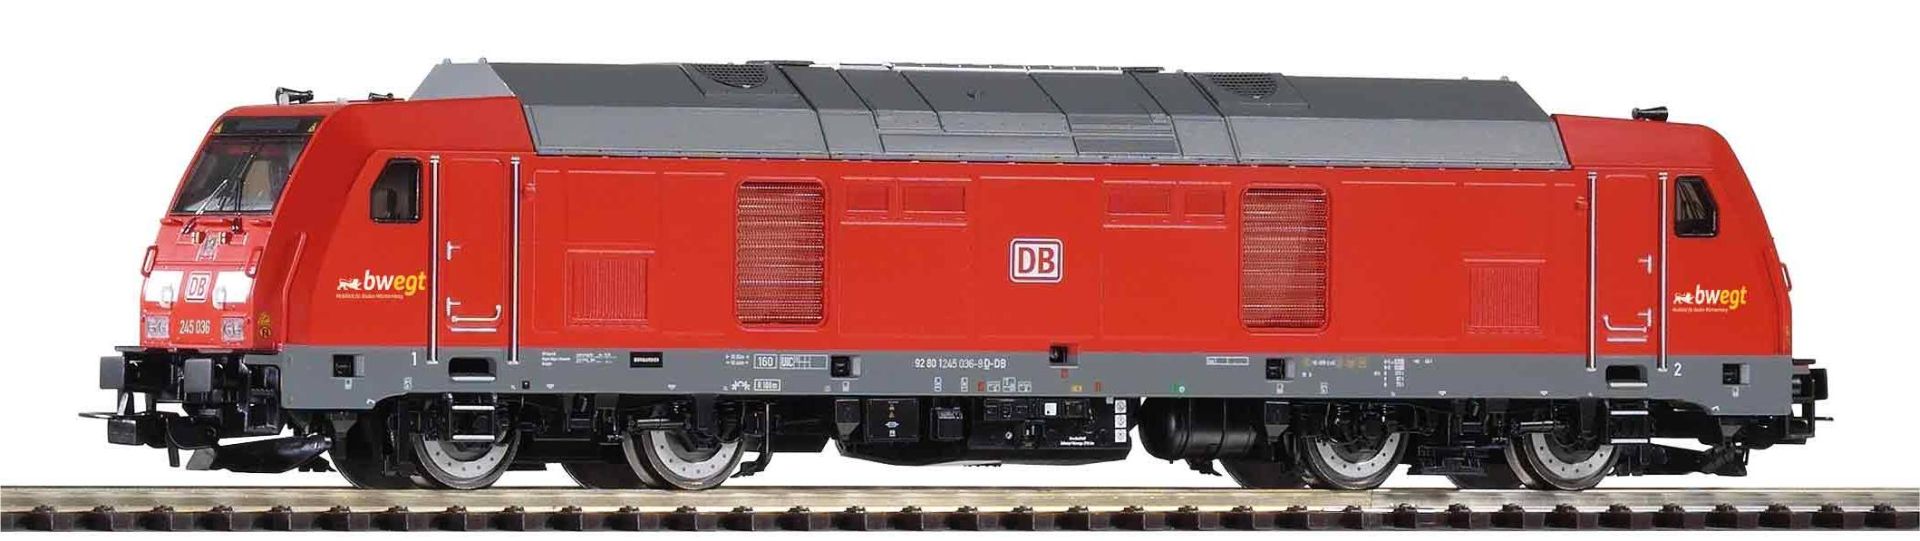 Piko 52526 - Diesellok BR 245 bwegt, DBAG, Ep.VI, DC-Sound